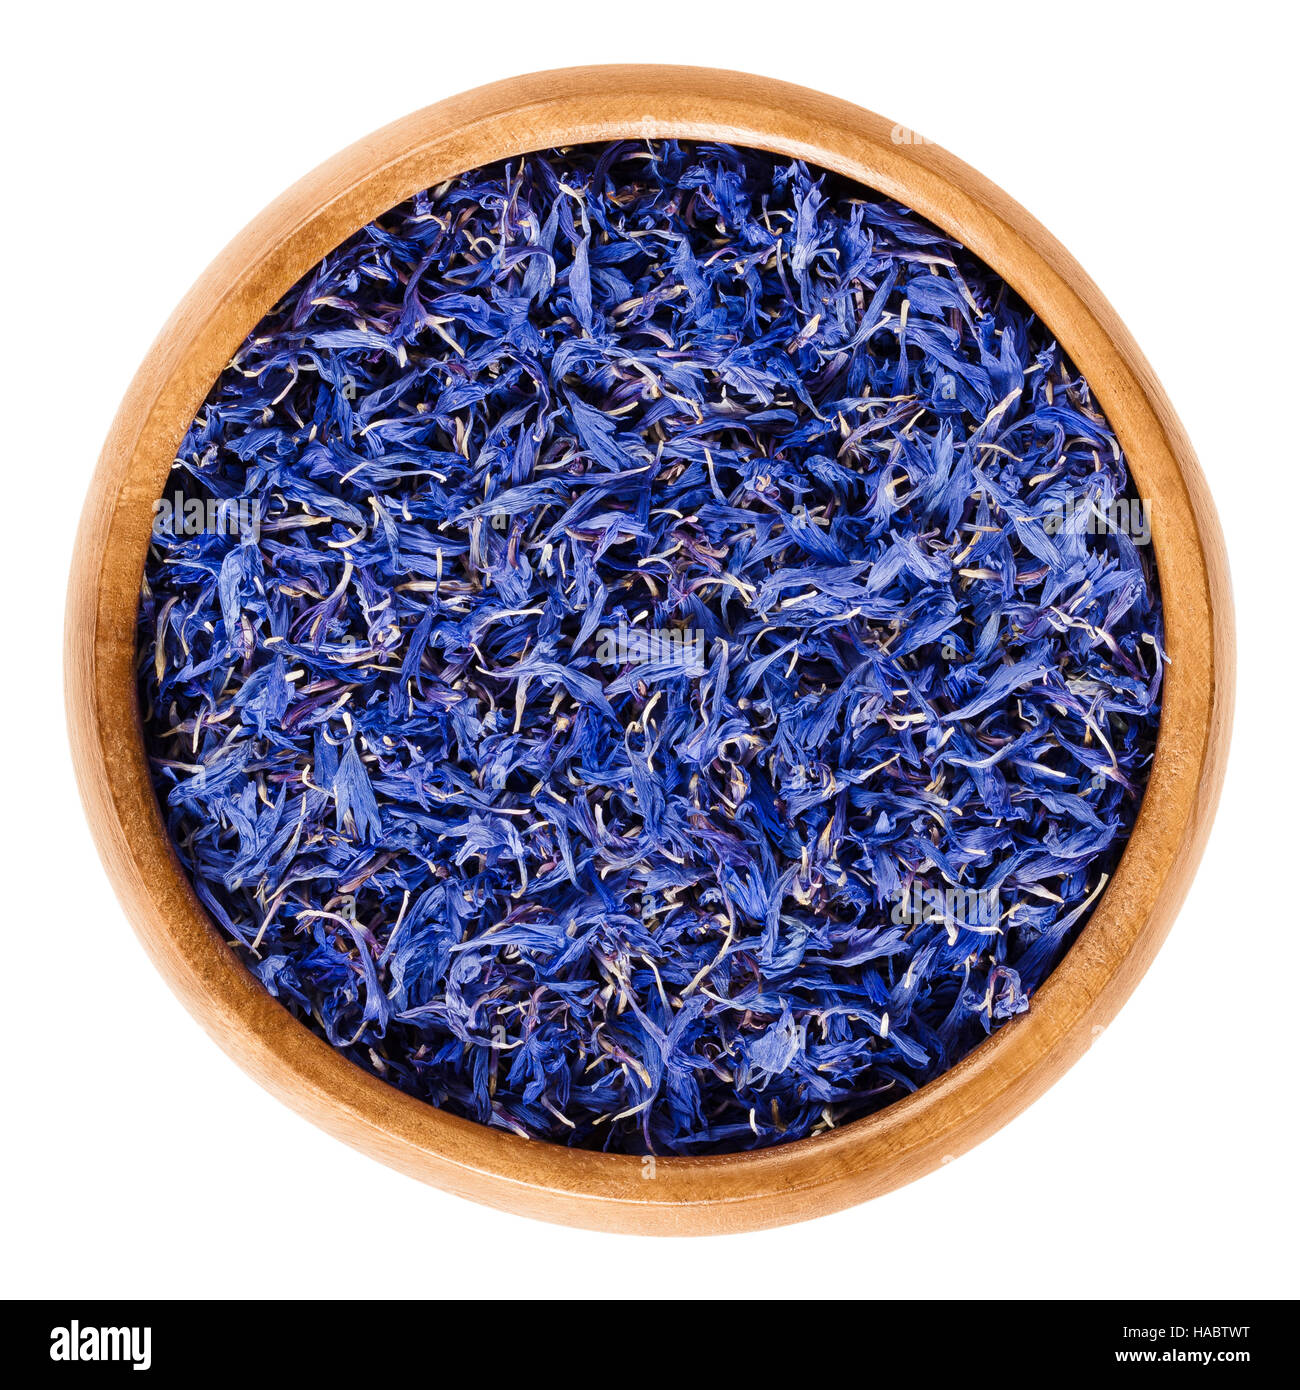 Getrocknete Kornblumen in Holzschale. Essbare Blumen von Centaurea Cyanus mit intensiv blauen Pigment für Tee und Salate verwendet. Stockfoto